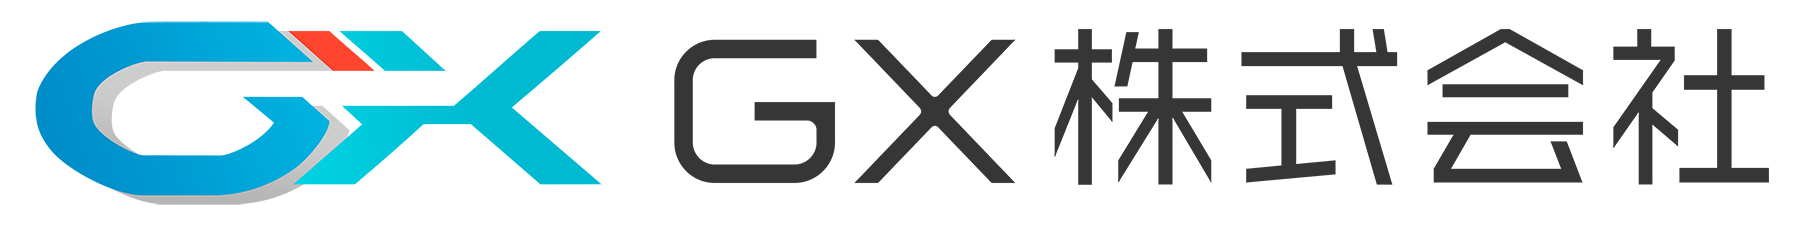 GX株式会社